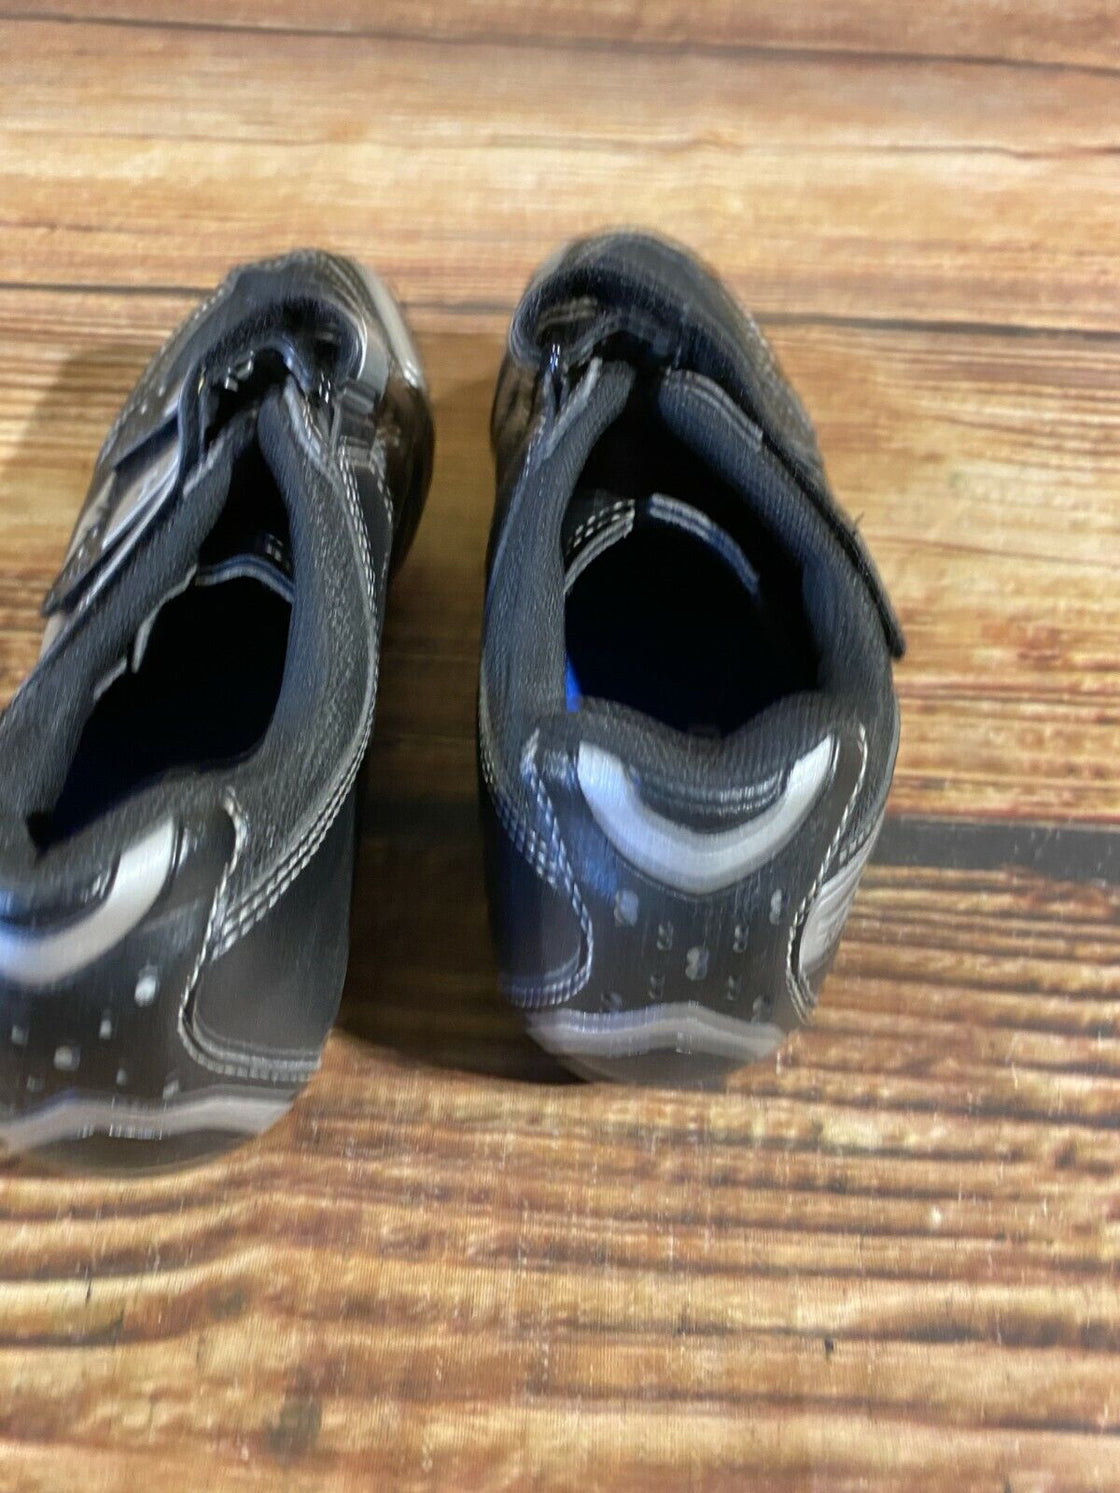 SHIMANO R076 Road Cycling Shoes Biking Boots 3 Bolts Size EU41, US7.6